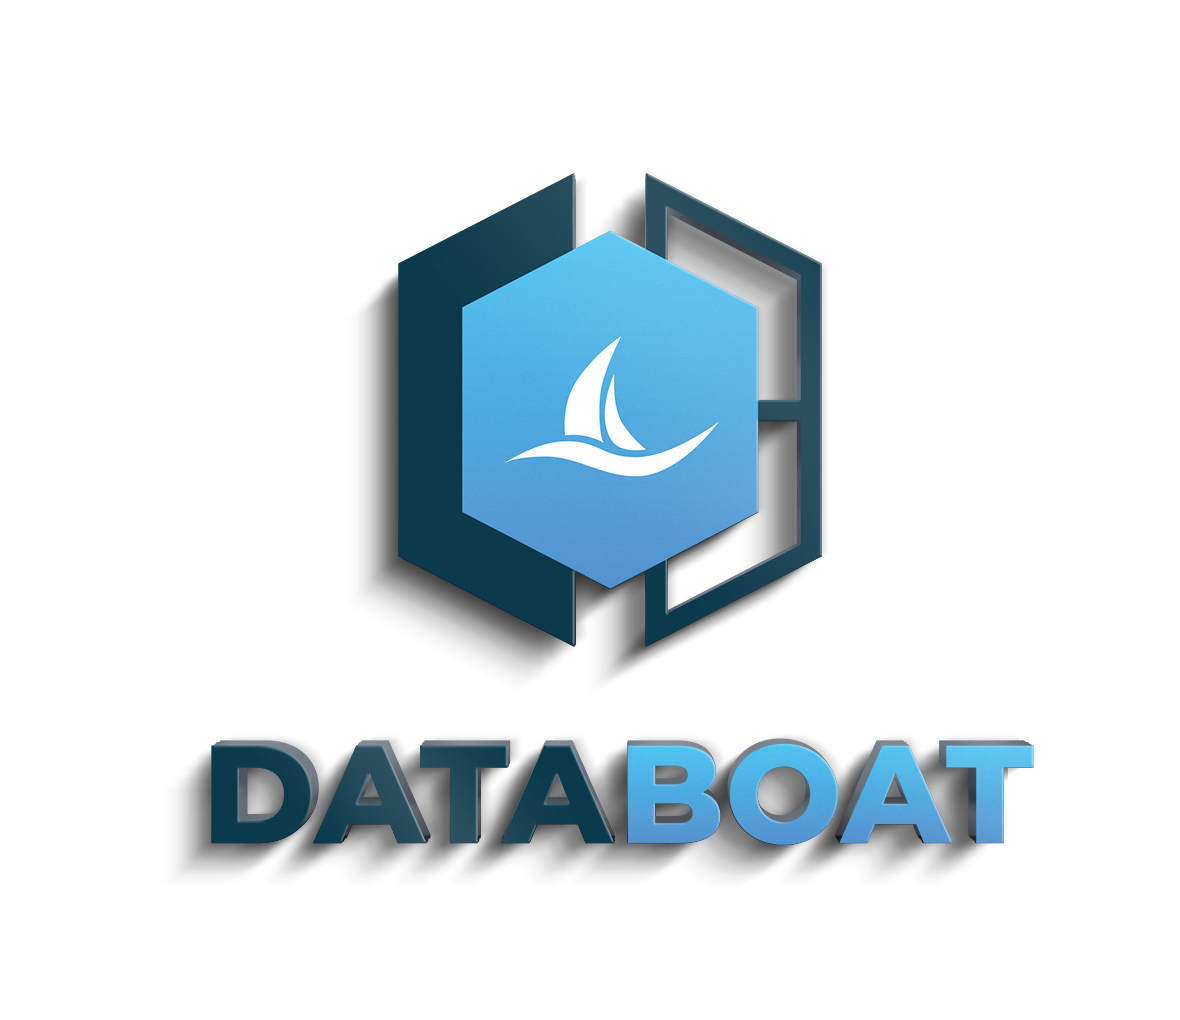 DataBoat